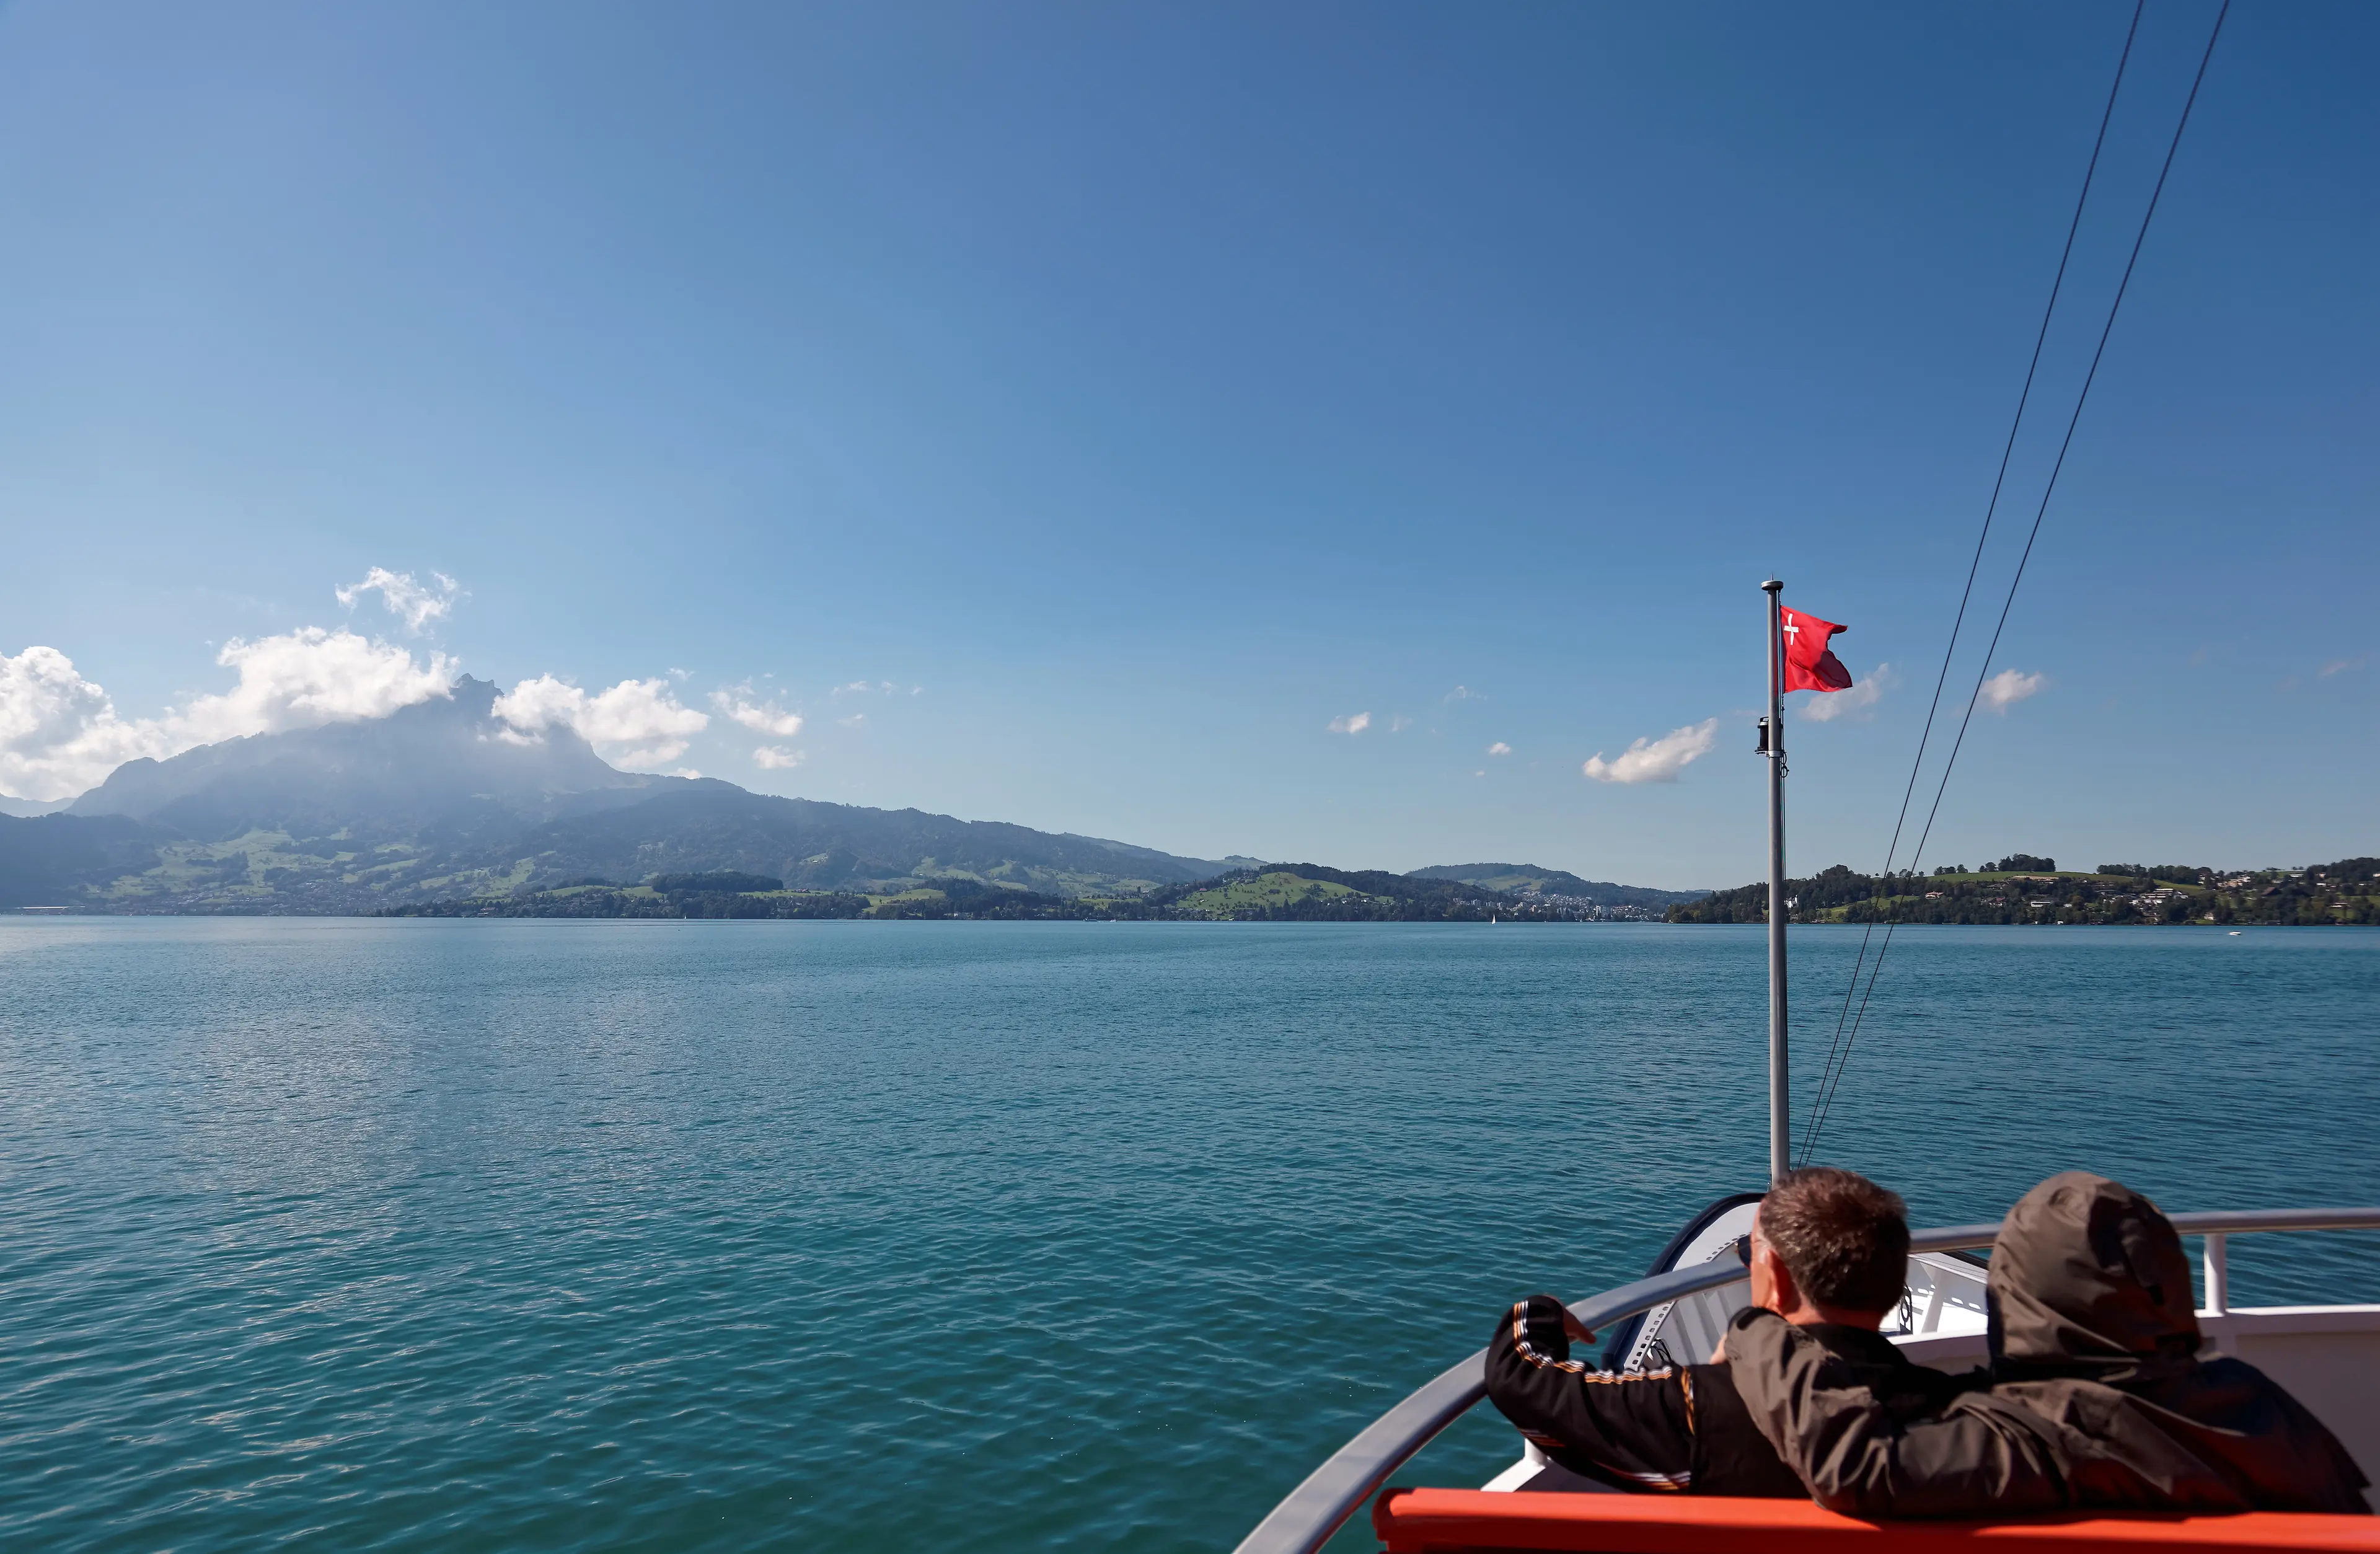 Boat ride on Lake Lucerne